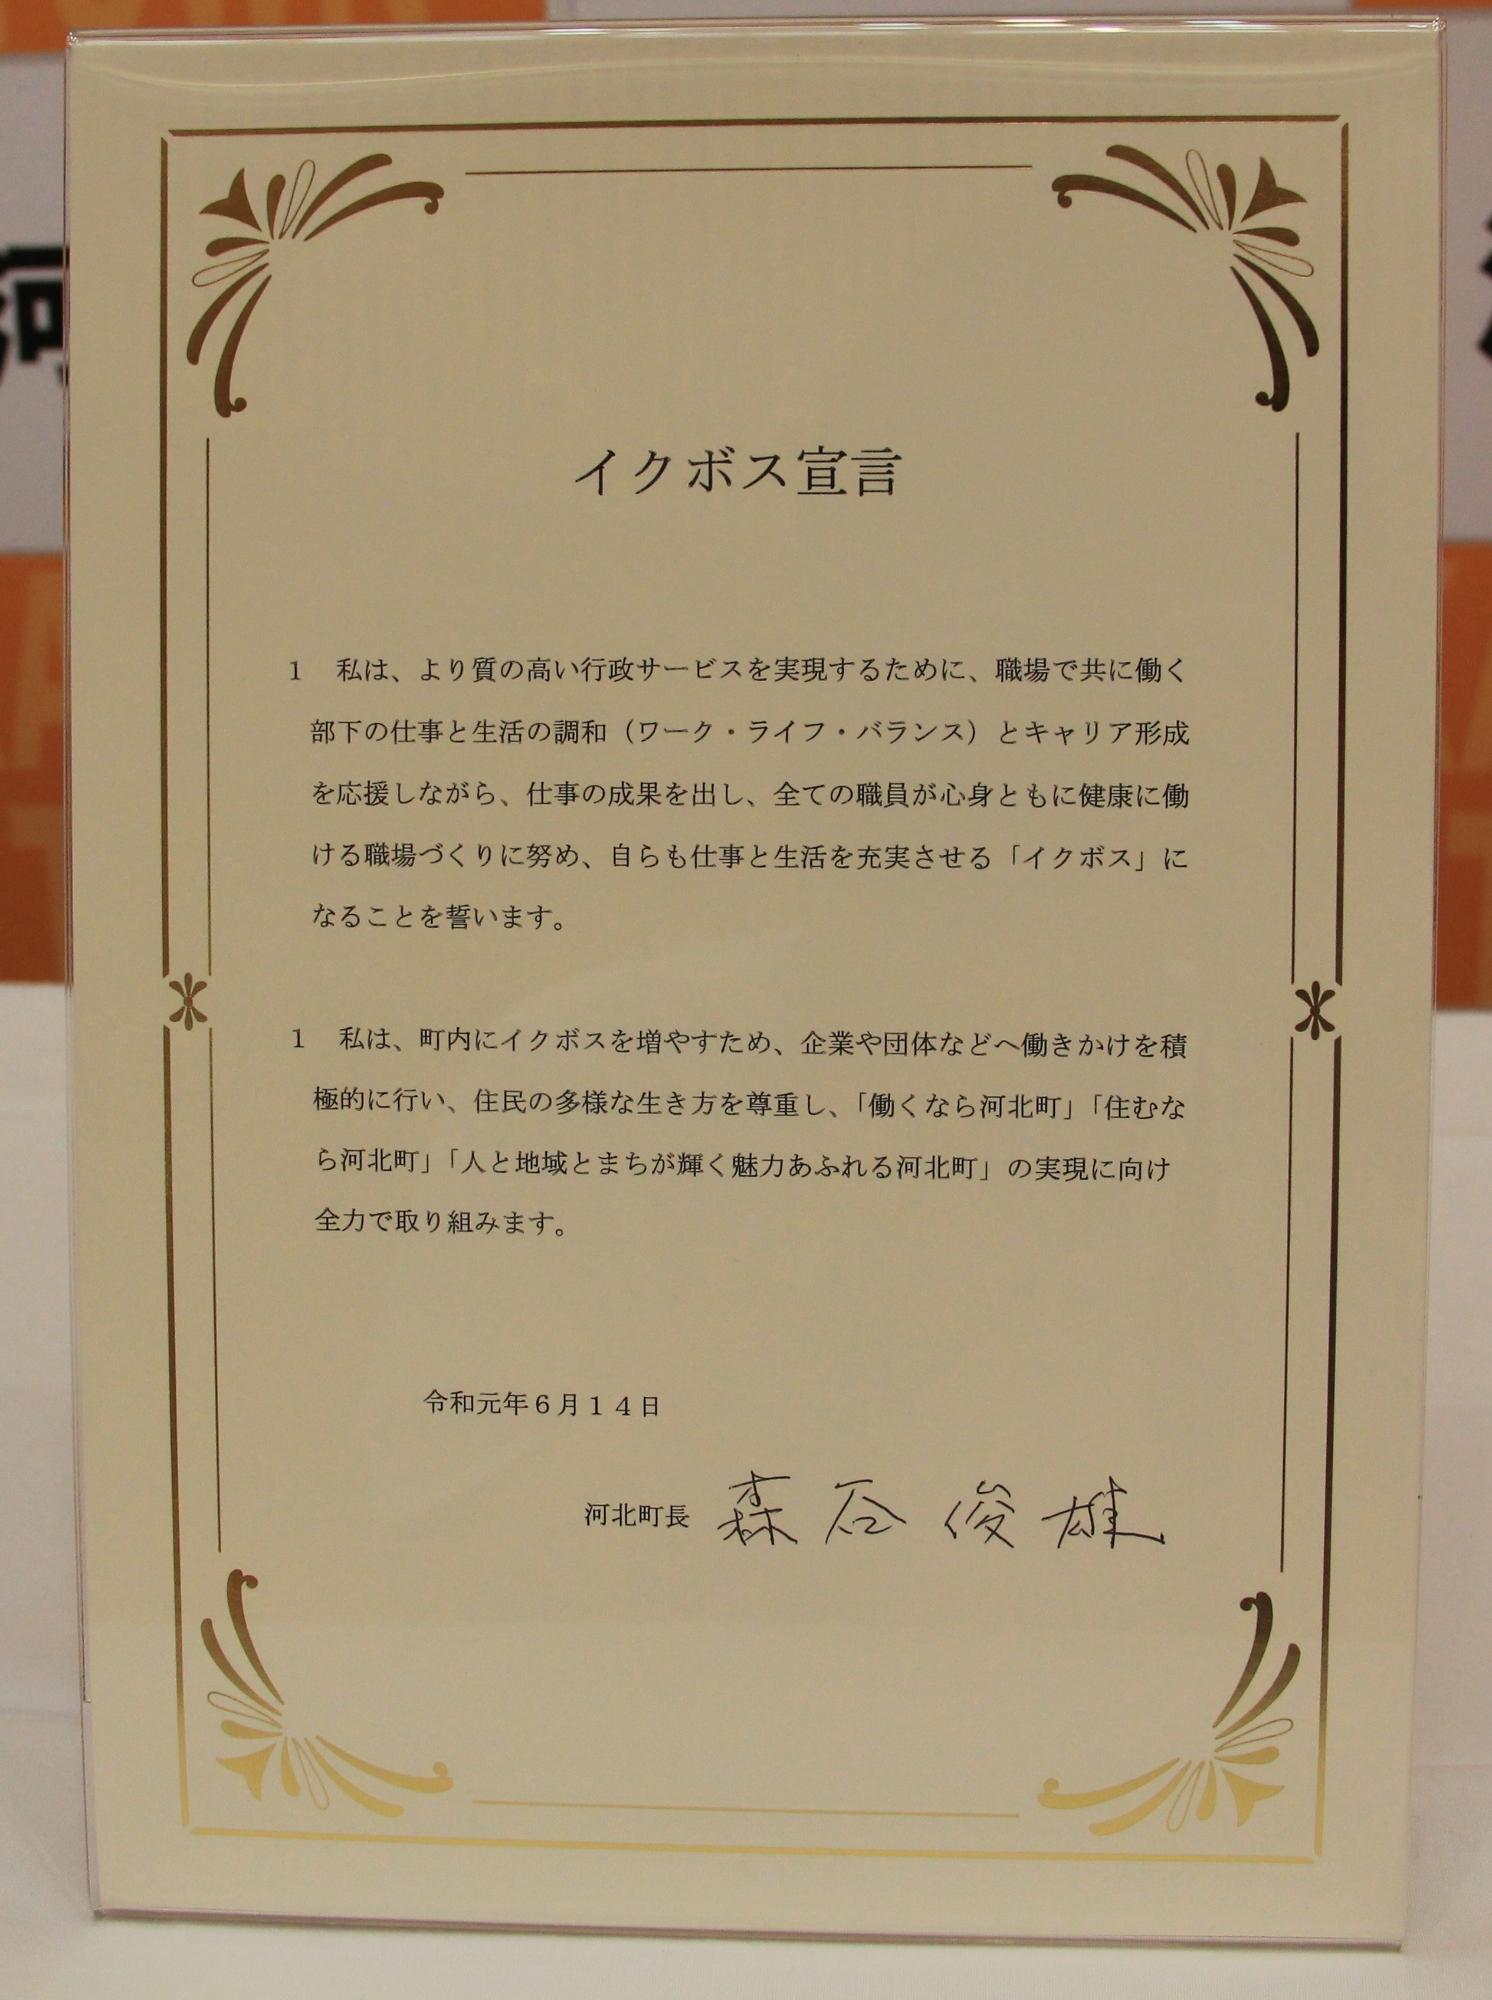 令和元年6月14日に記入された河北町長のサインが入った書類の写真